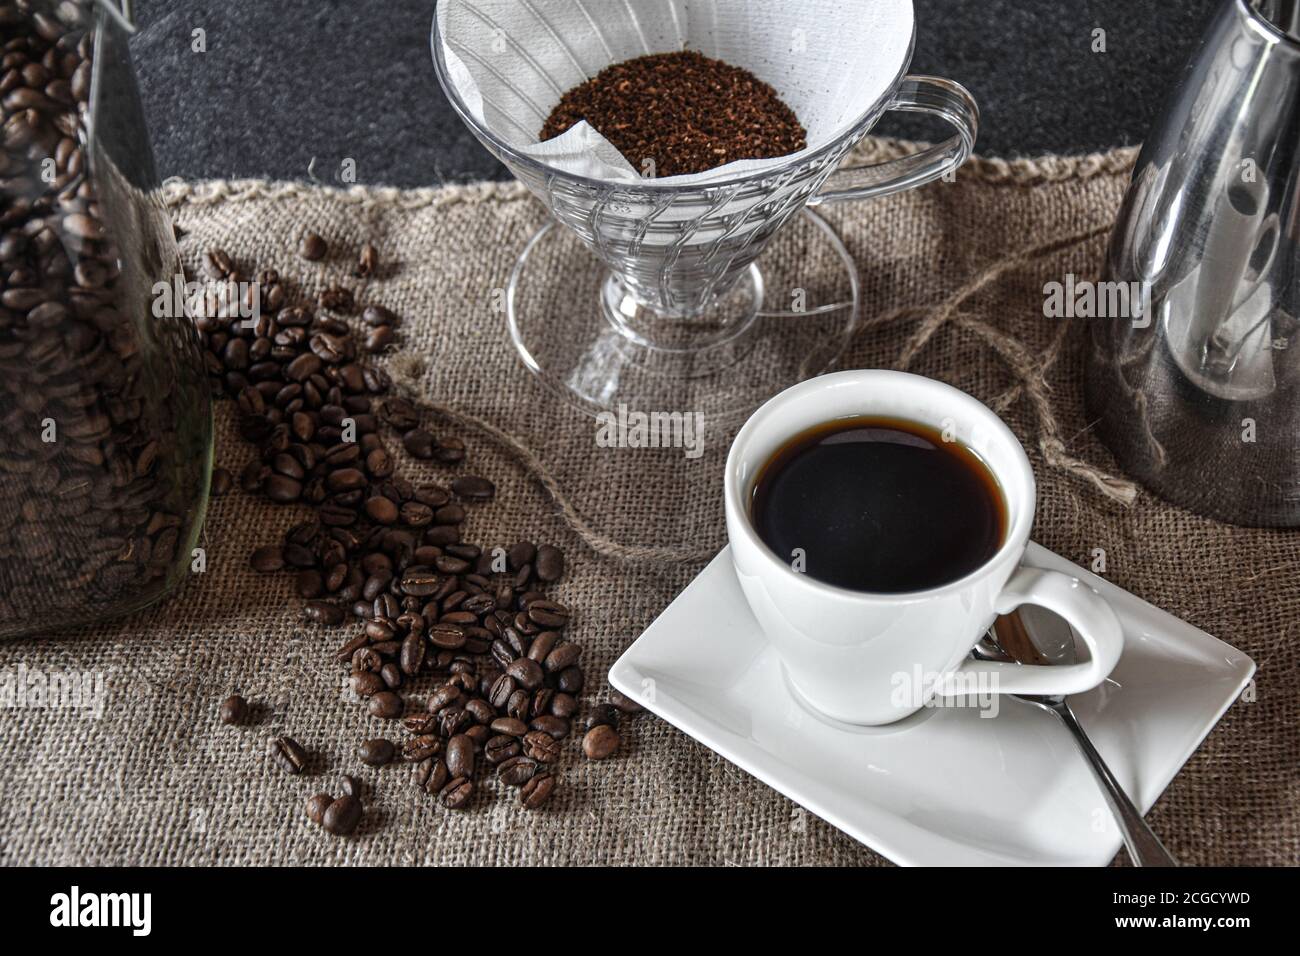 Kaffee in einer weißen Tasse auf einem Jutetuch mit silberner Kaffeekanne, Filter und Kaffeebohnen zur Dekoration Stockfoto